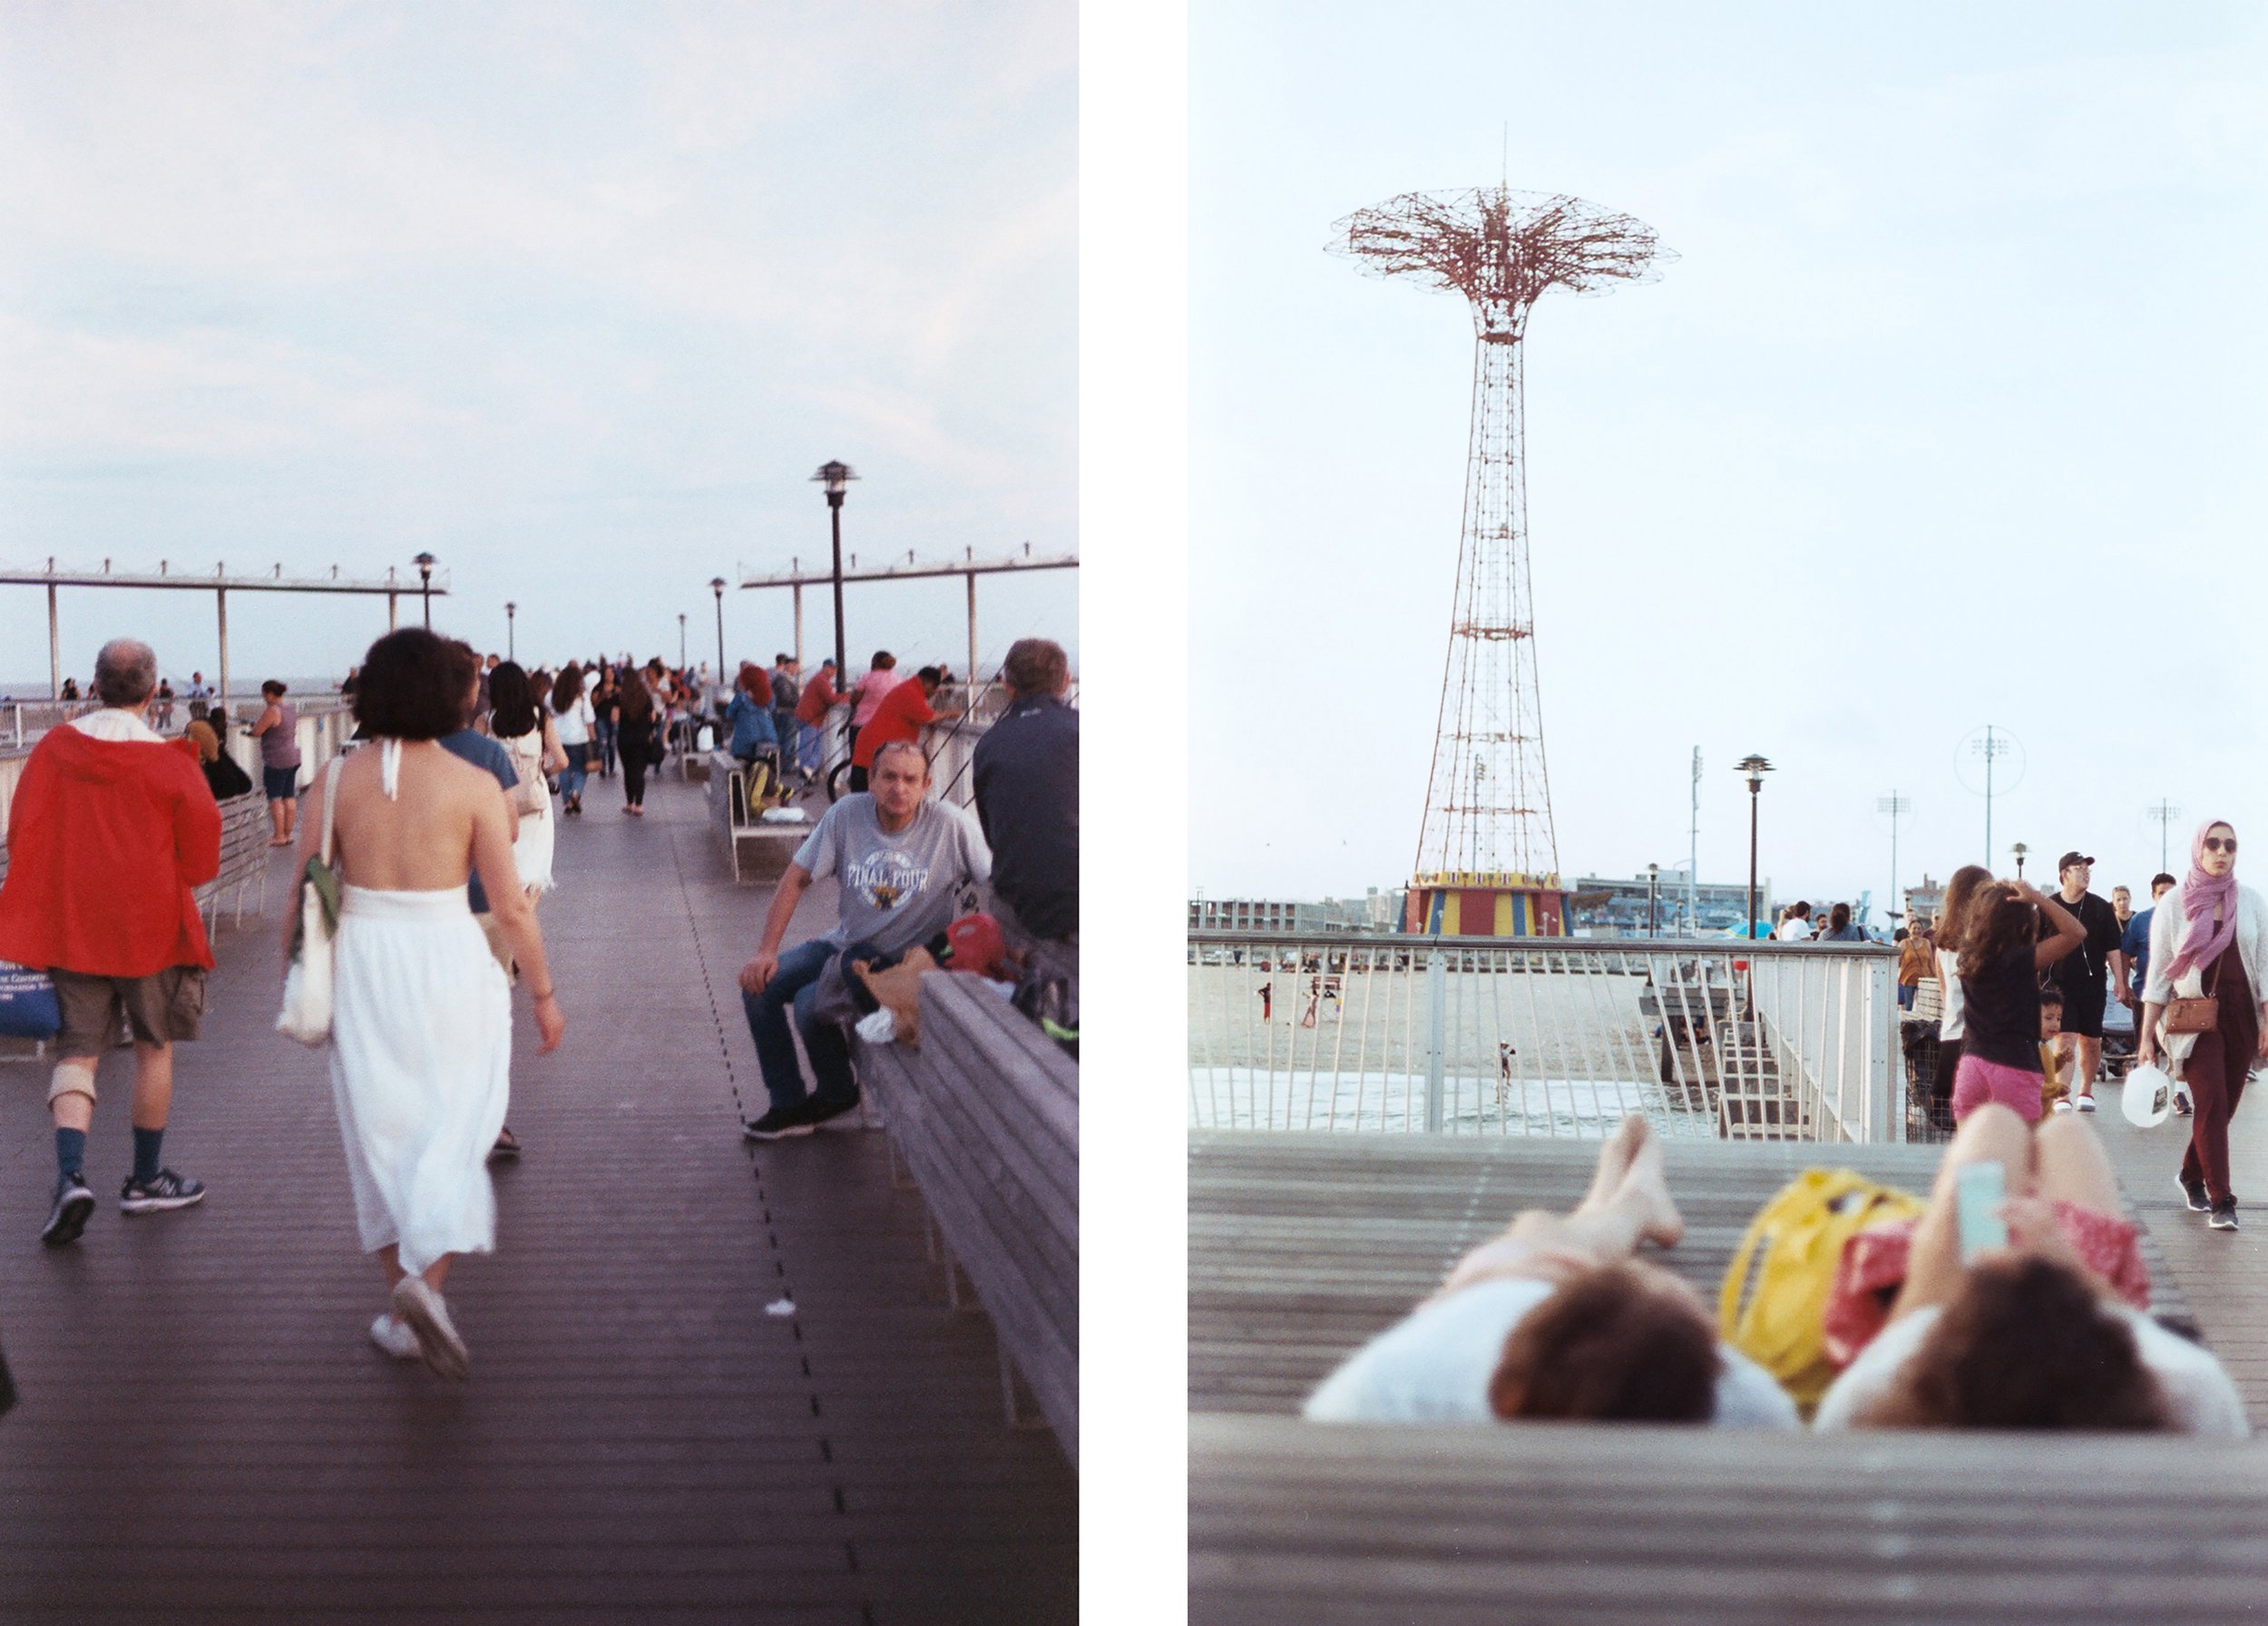   White Dress.  Coney Island, NY. 2019.   Parachute Jump from the Pier.  Coney Island, NY. 2019. 